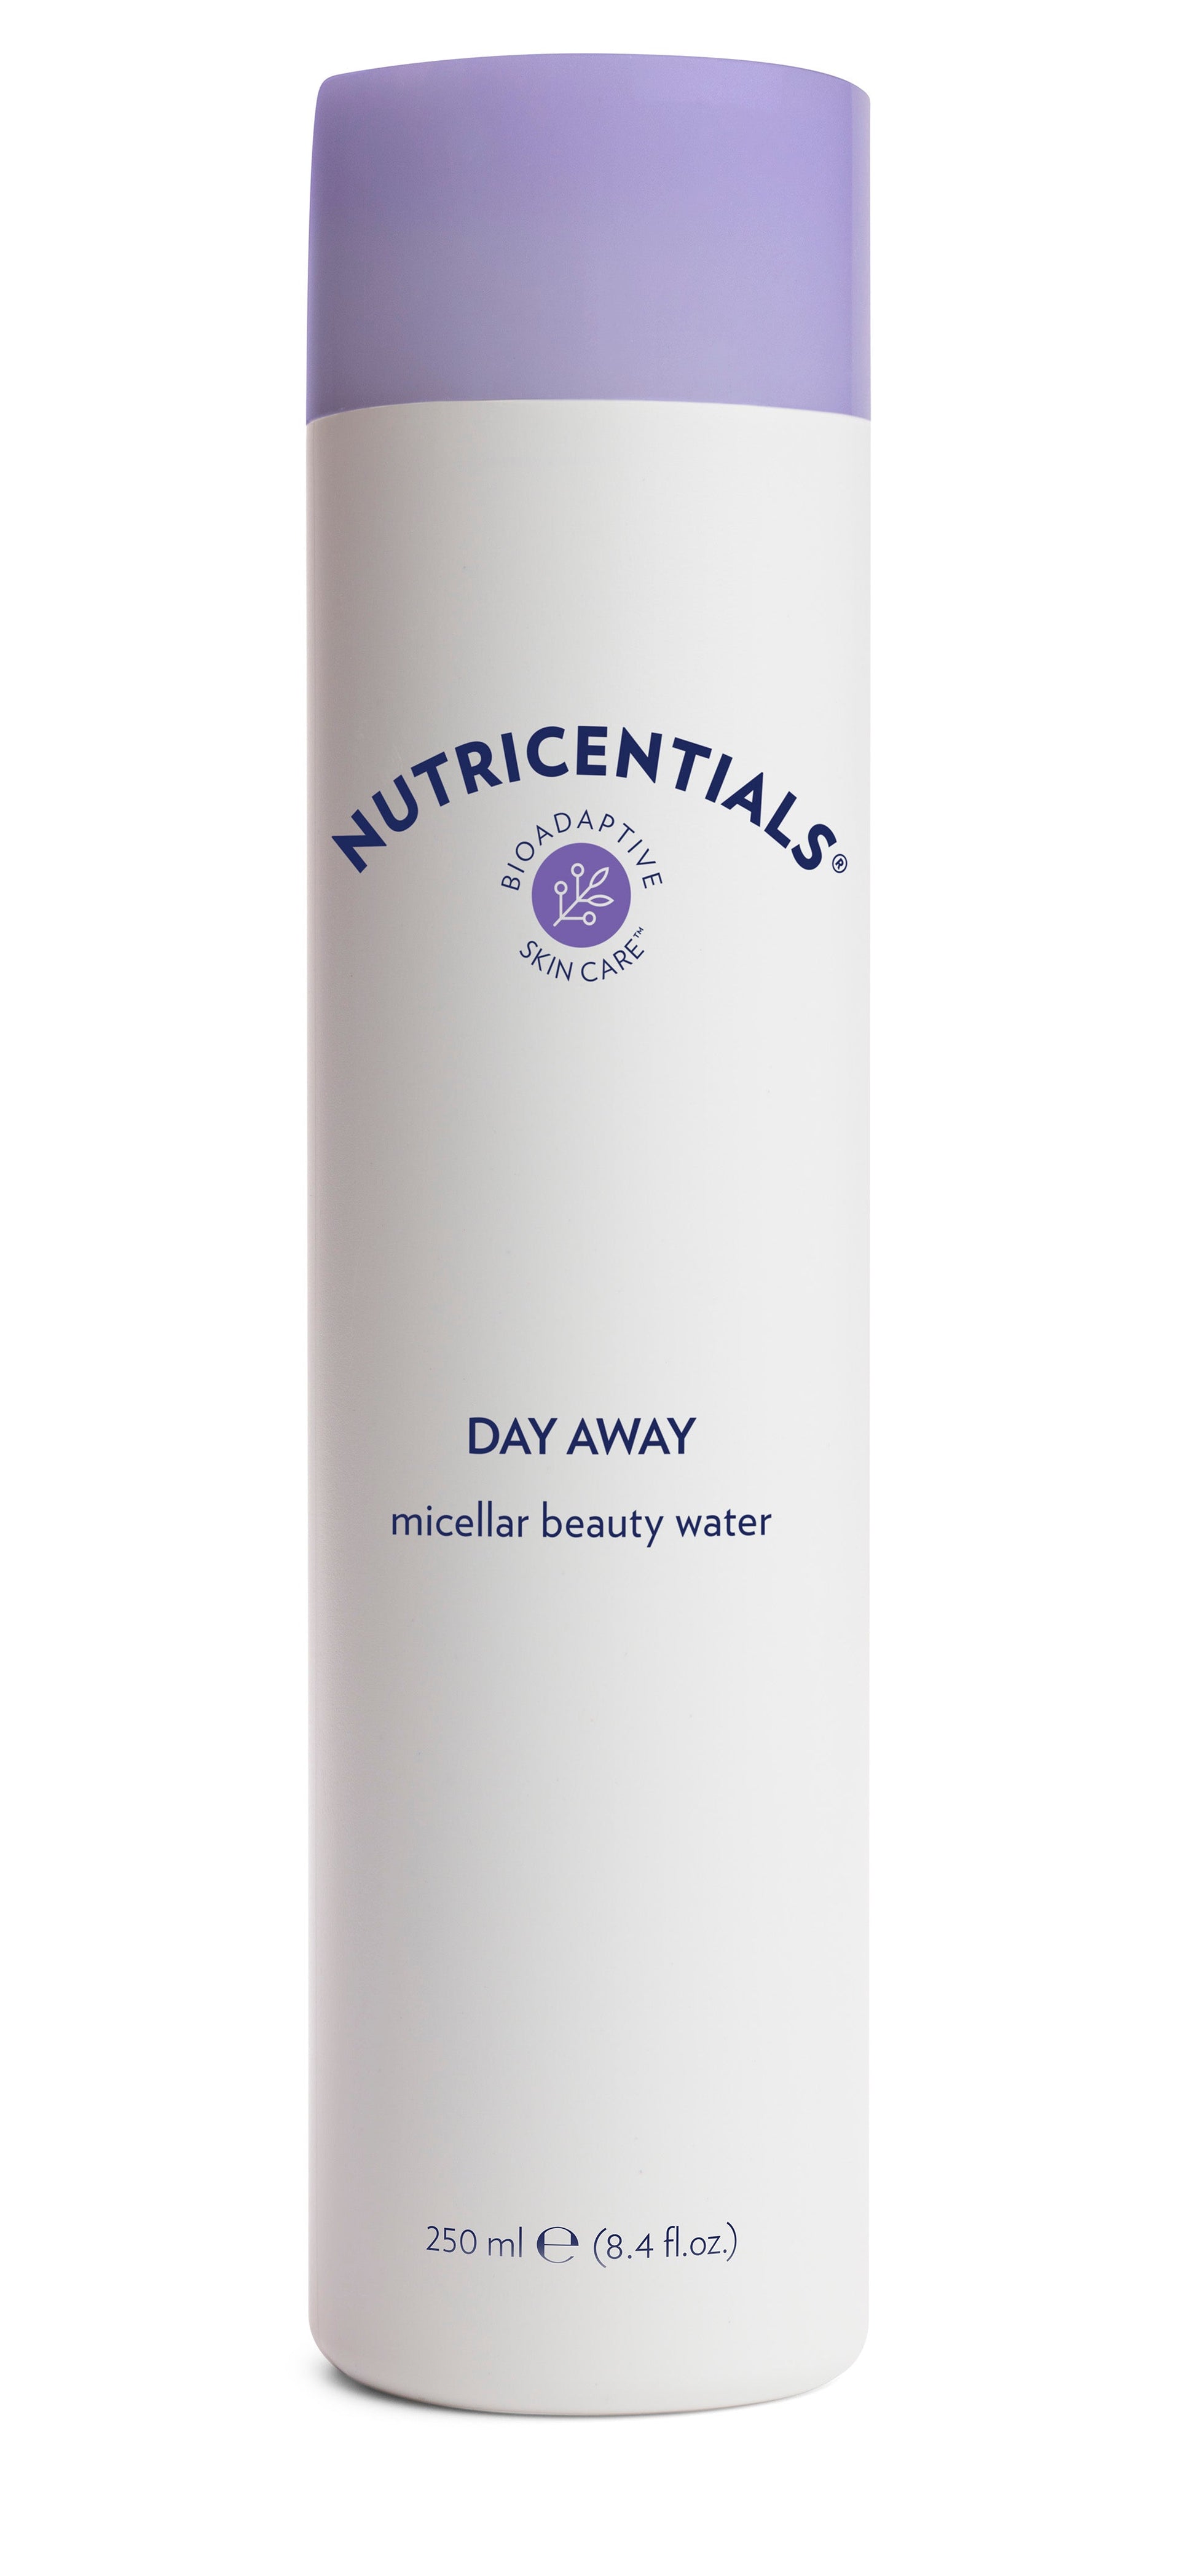 Day Away Micellar Beauty Water von Nutricentials 20% günstiger